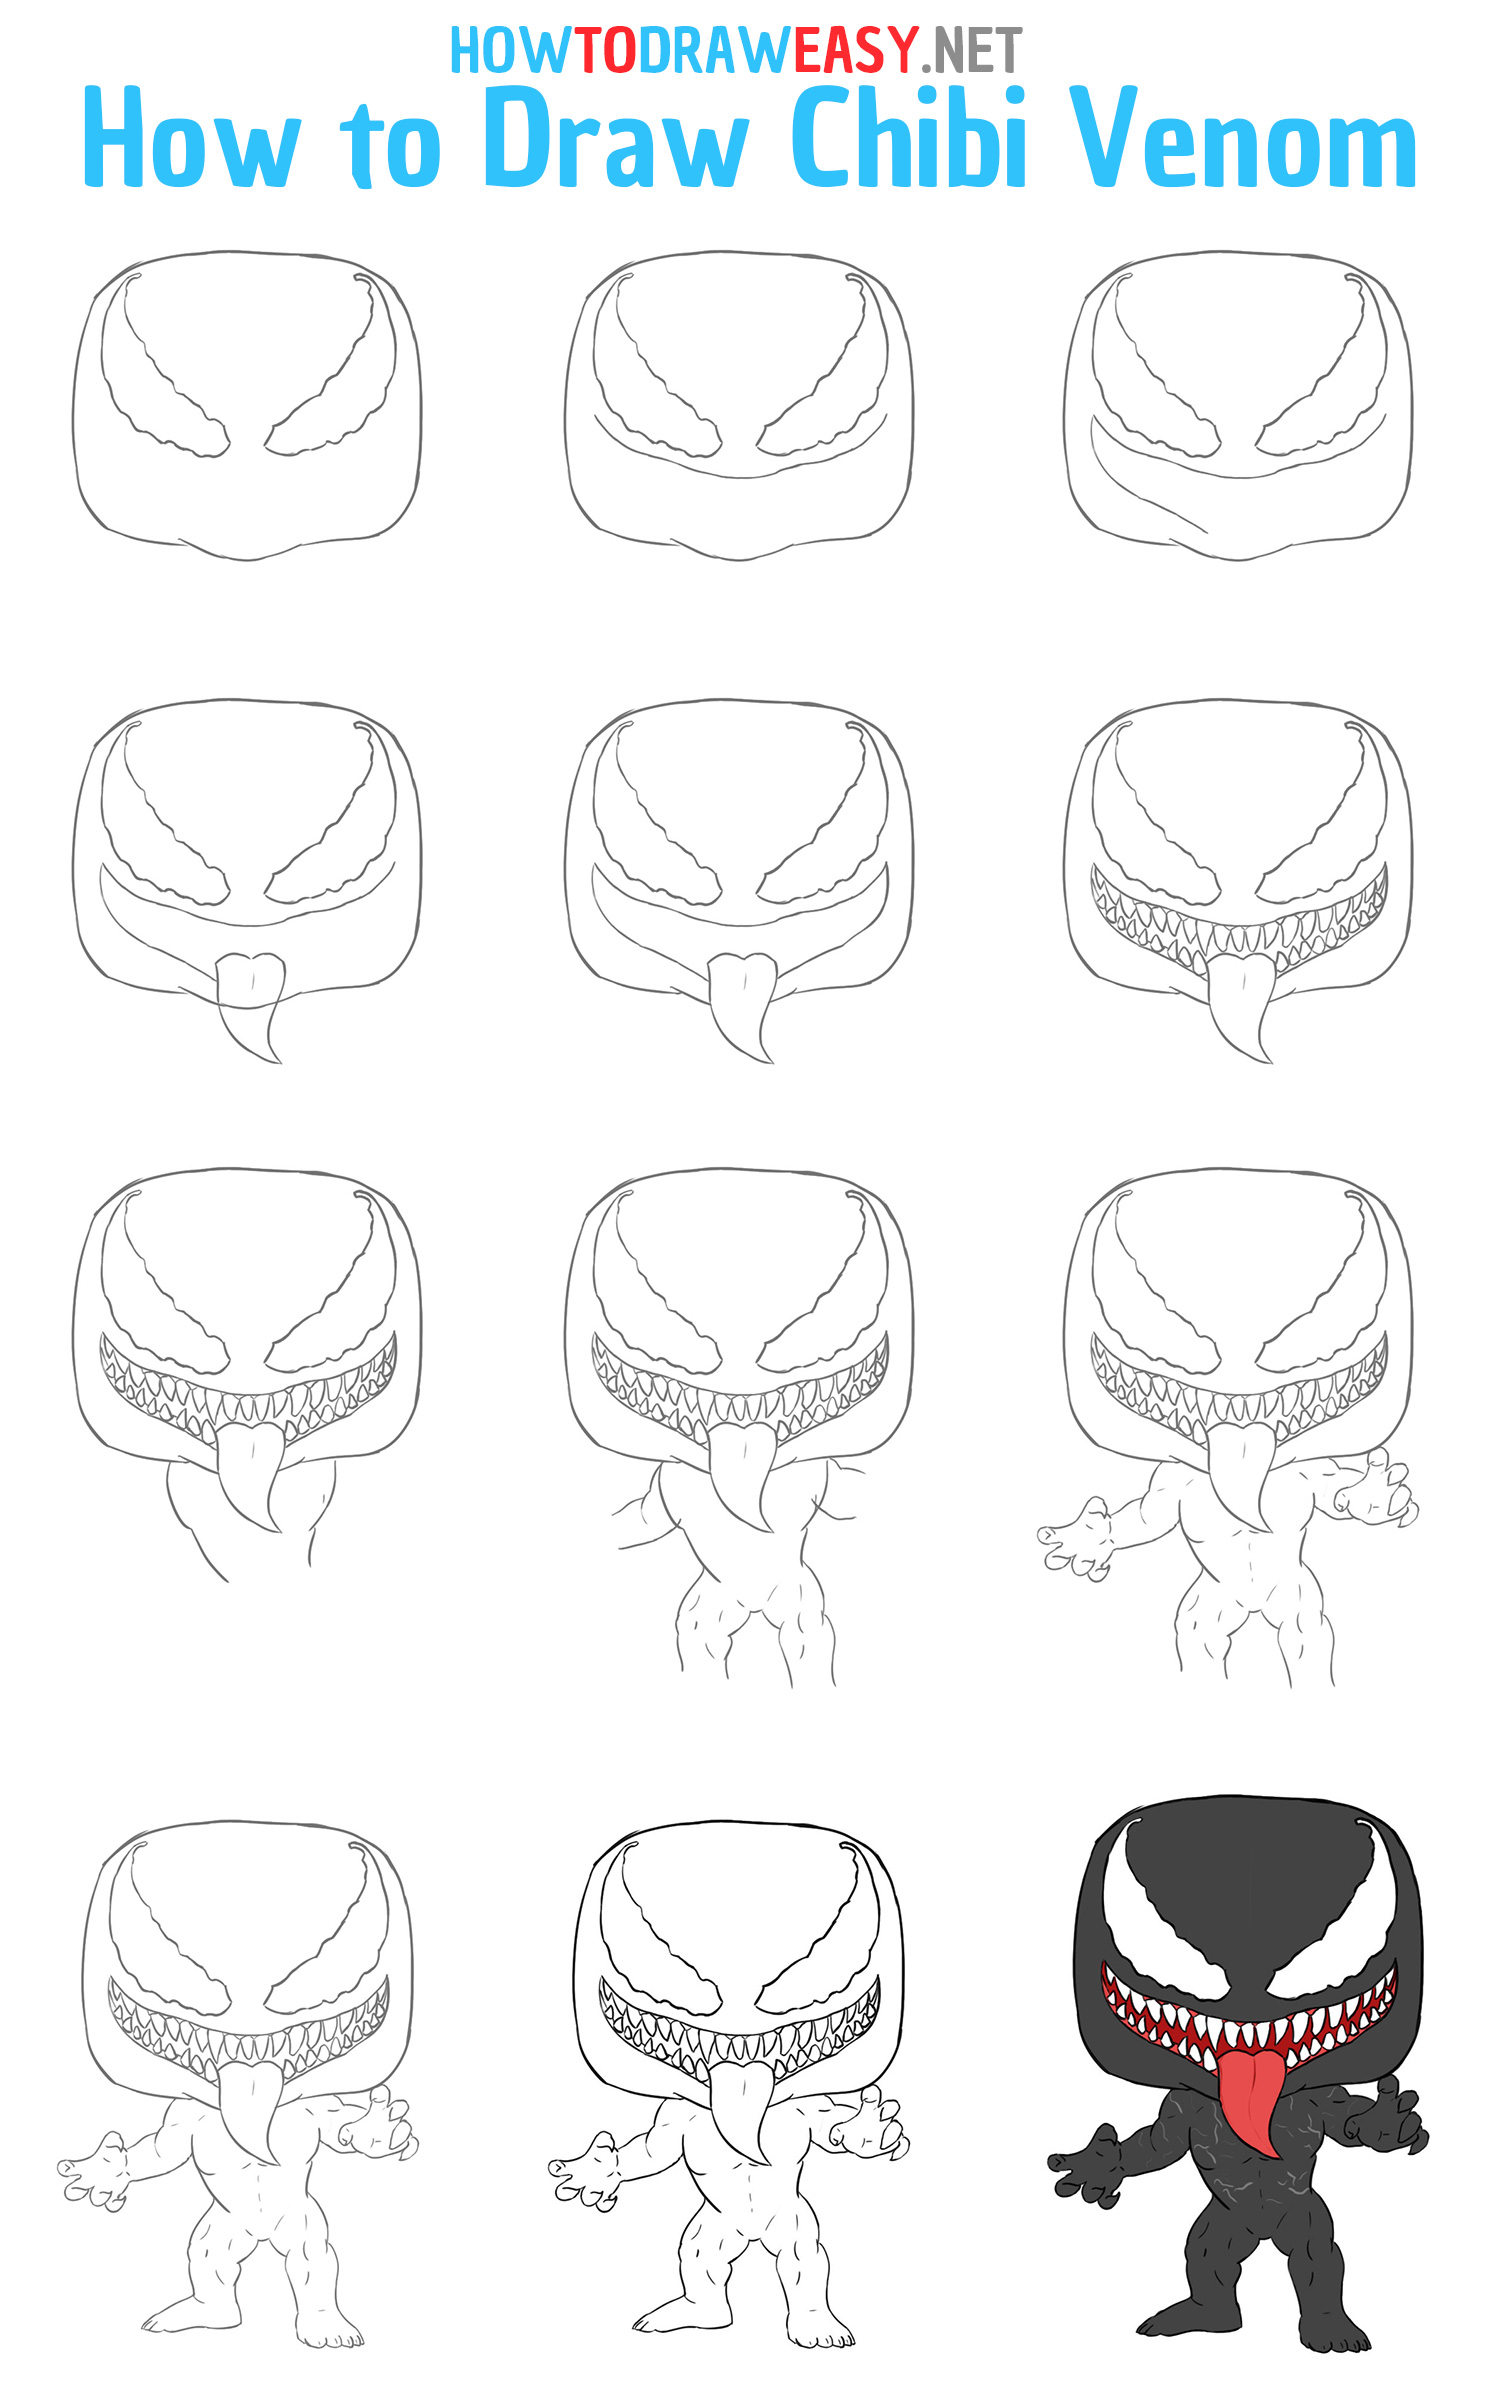 How to Draw Chibi Venom Step by Step